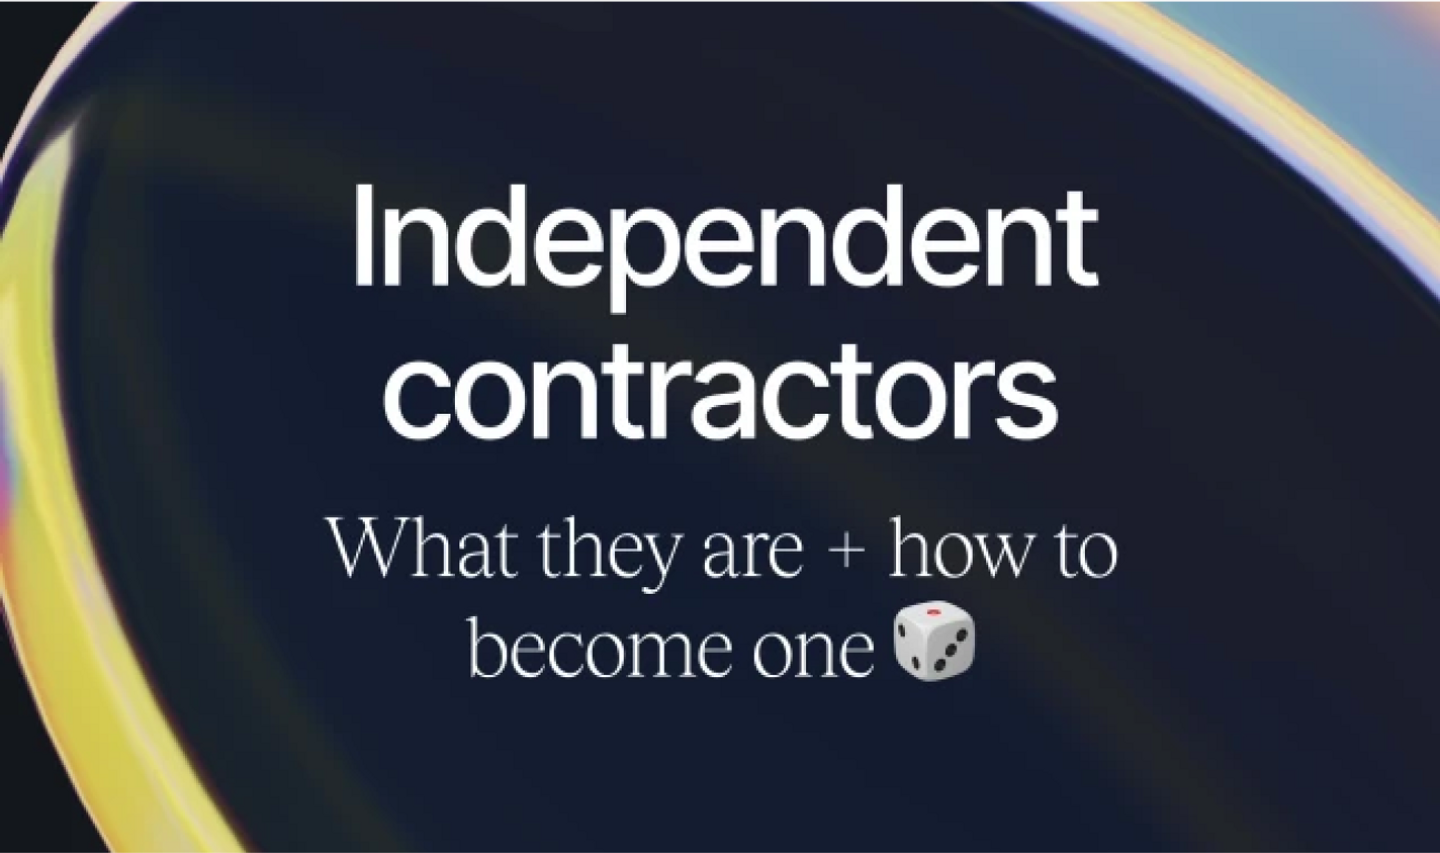 Independent contractors